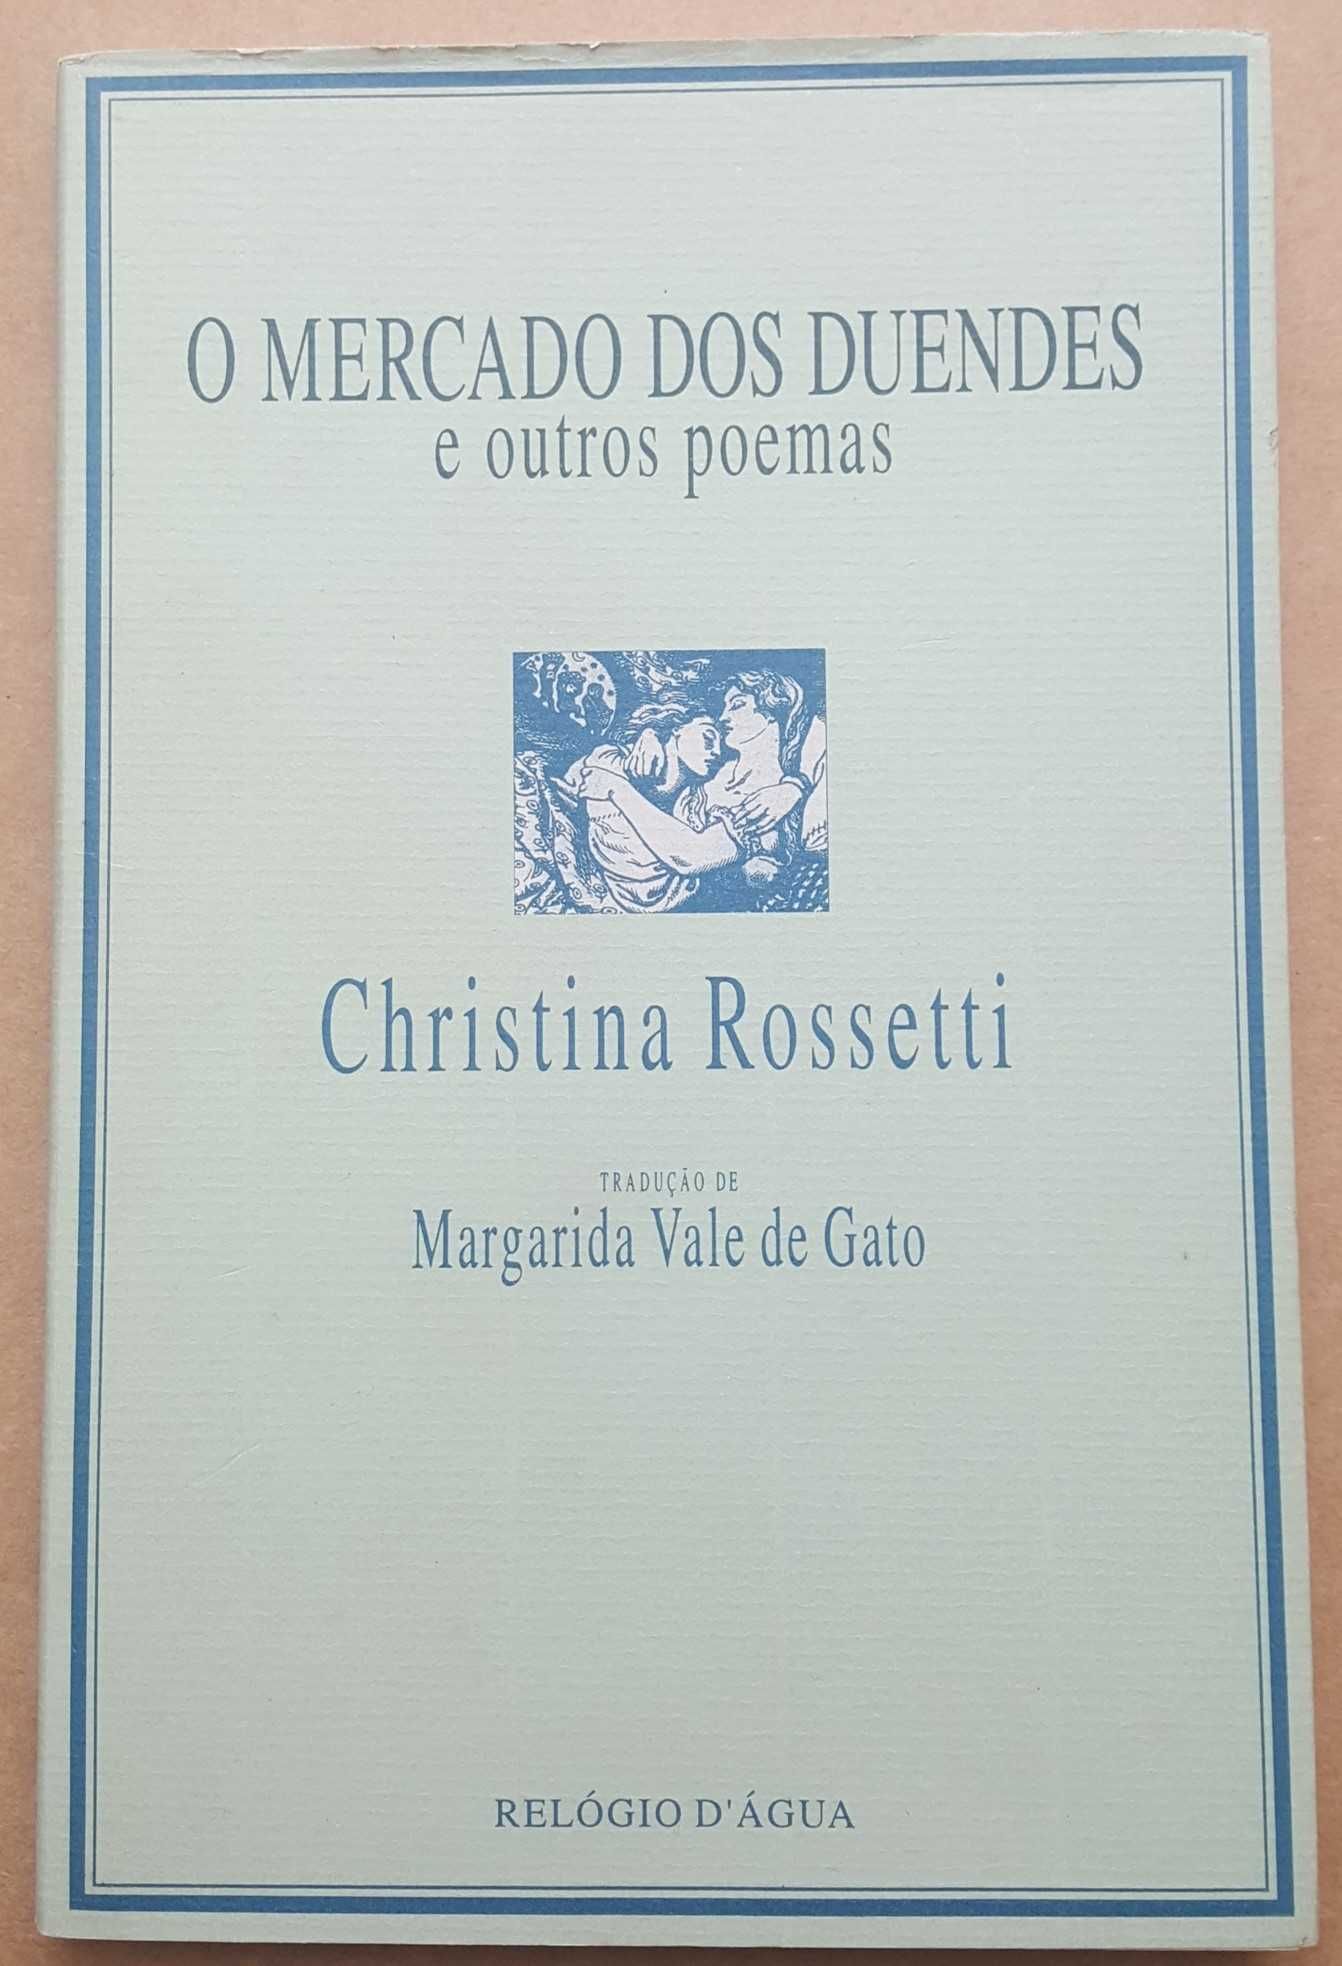 Christina Rossetti- O Mercado dos Duendes [Relógio d' Água]